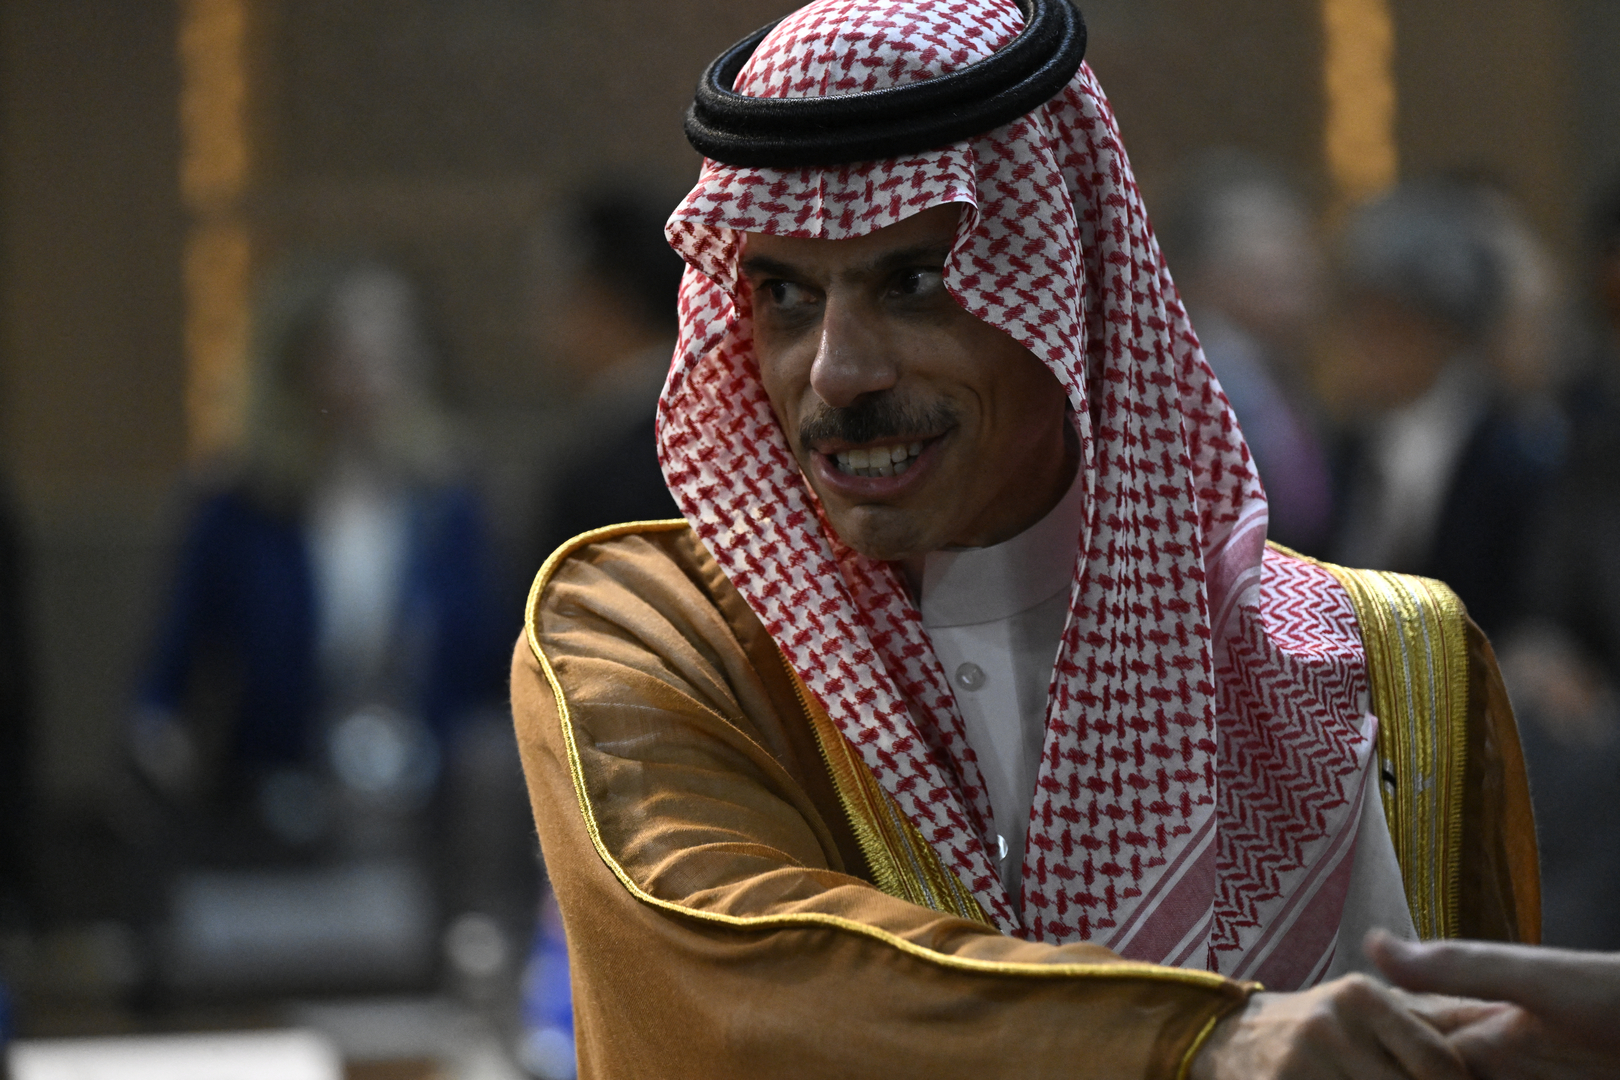 وزير الخارجية السعودي الأمير فيصل بن فرحان يثير بسيارته تفاعلا (فيديو)